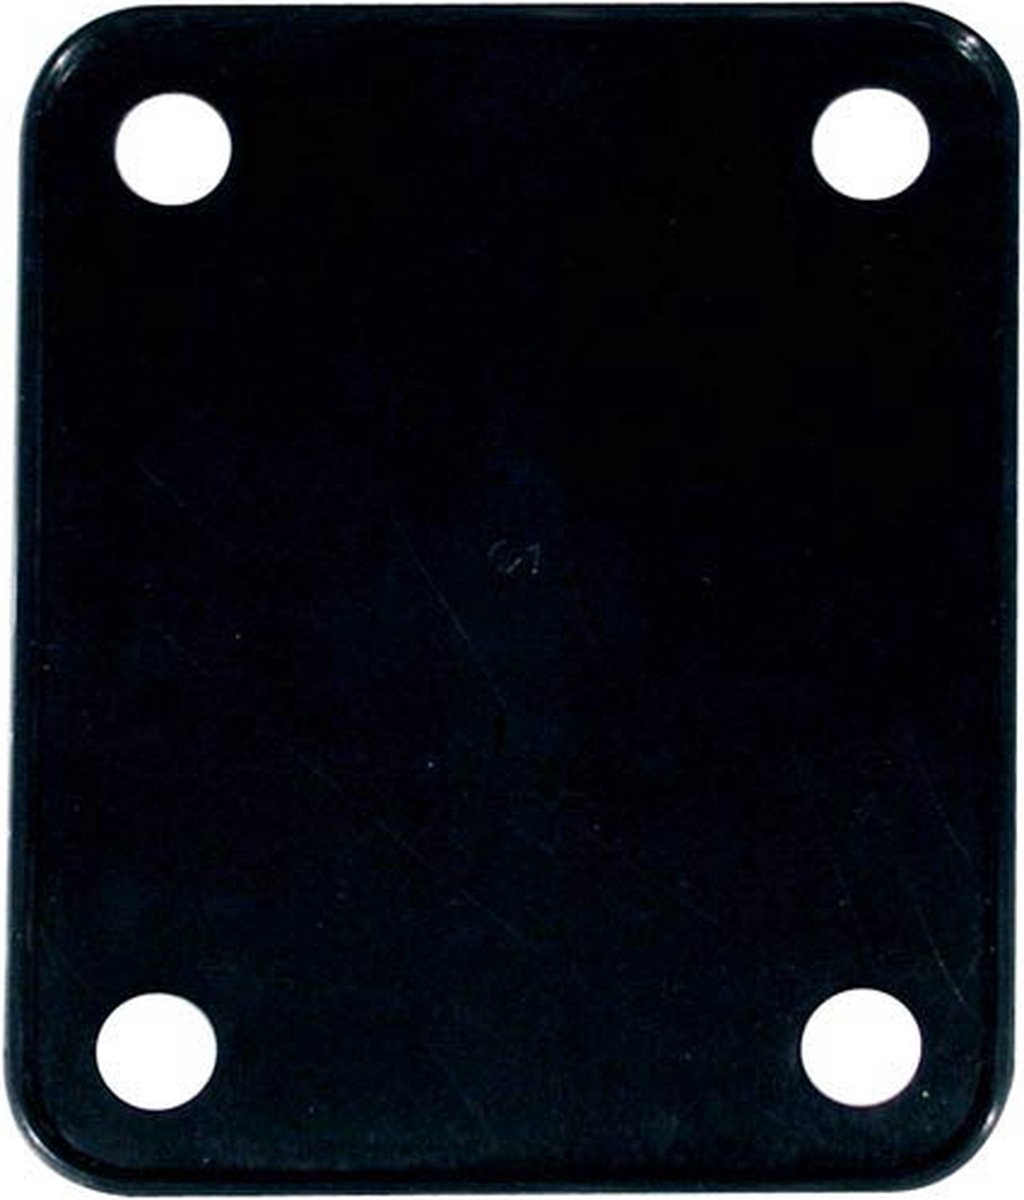 neck plate cushion, zwart, 64,2x51mm, for NP-64 halsplaats